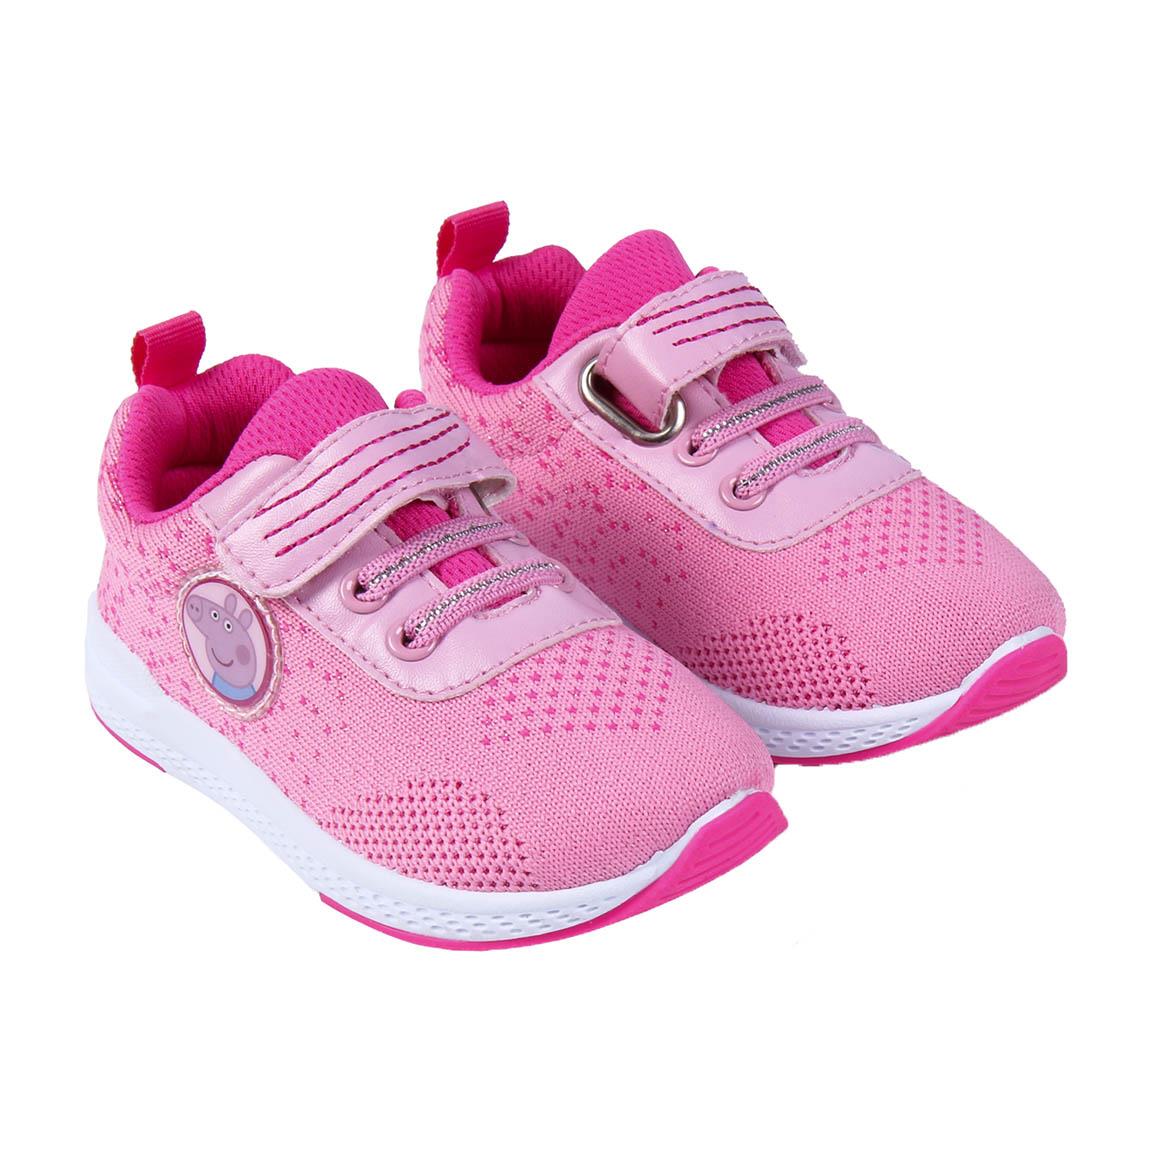 Κορίτσι Sneaker ρόζ Peppa Pig 2300004939